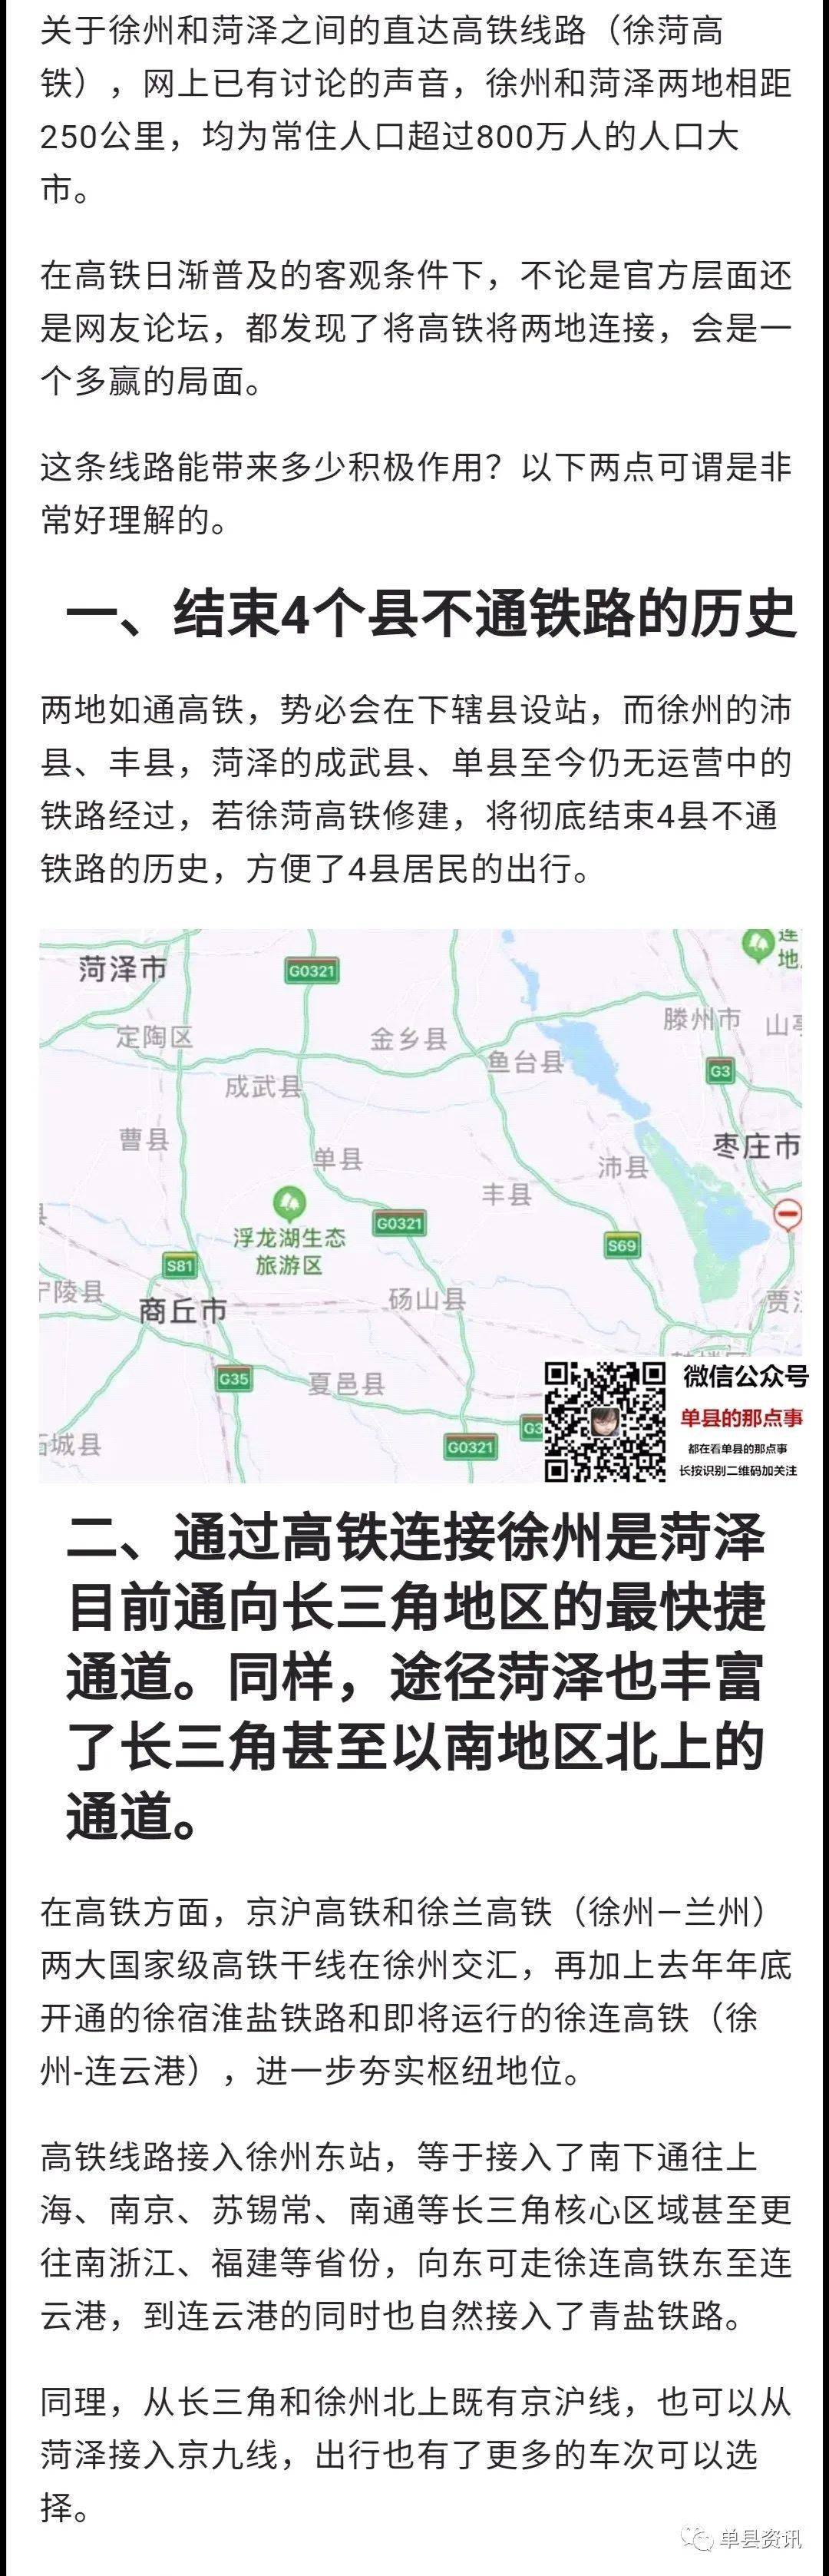 菏徐高铁路线规划图图片